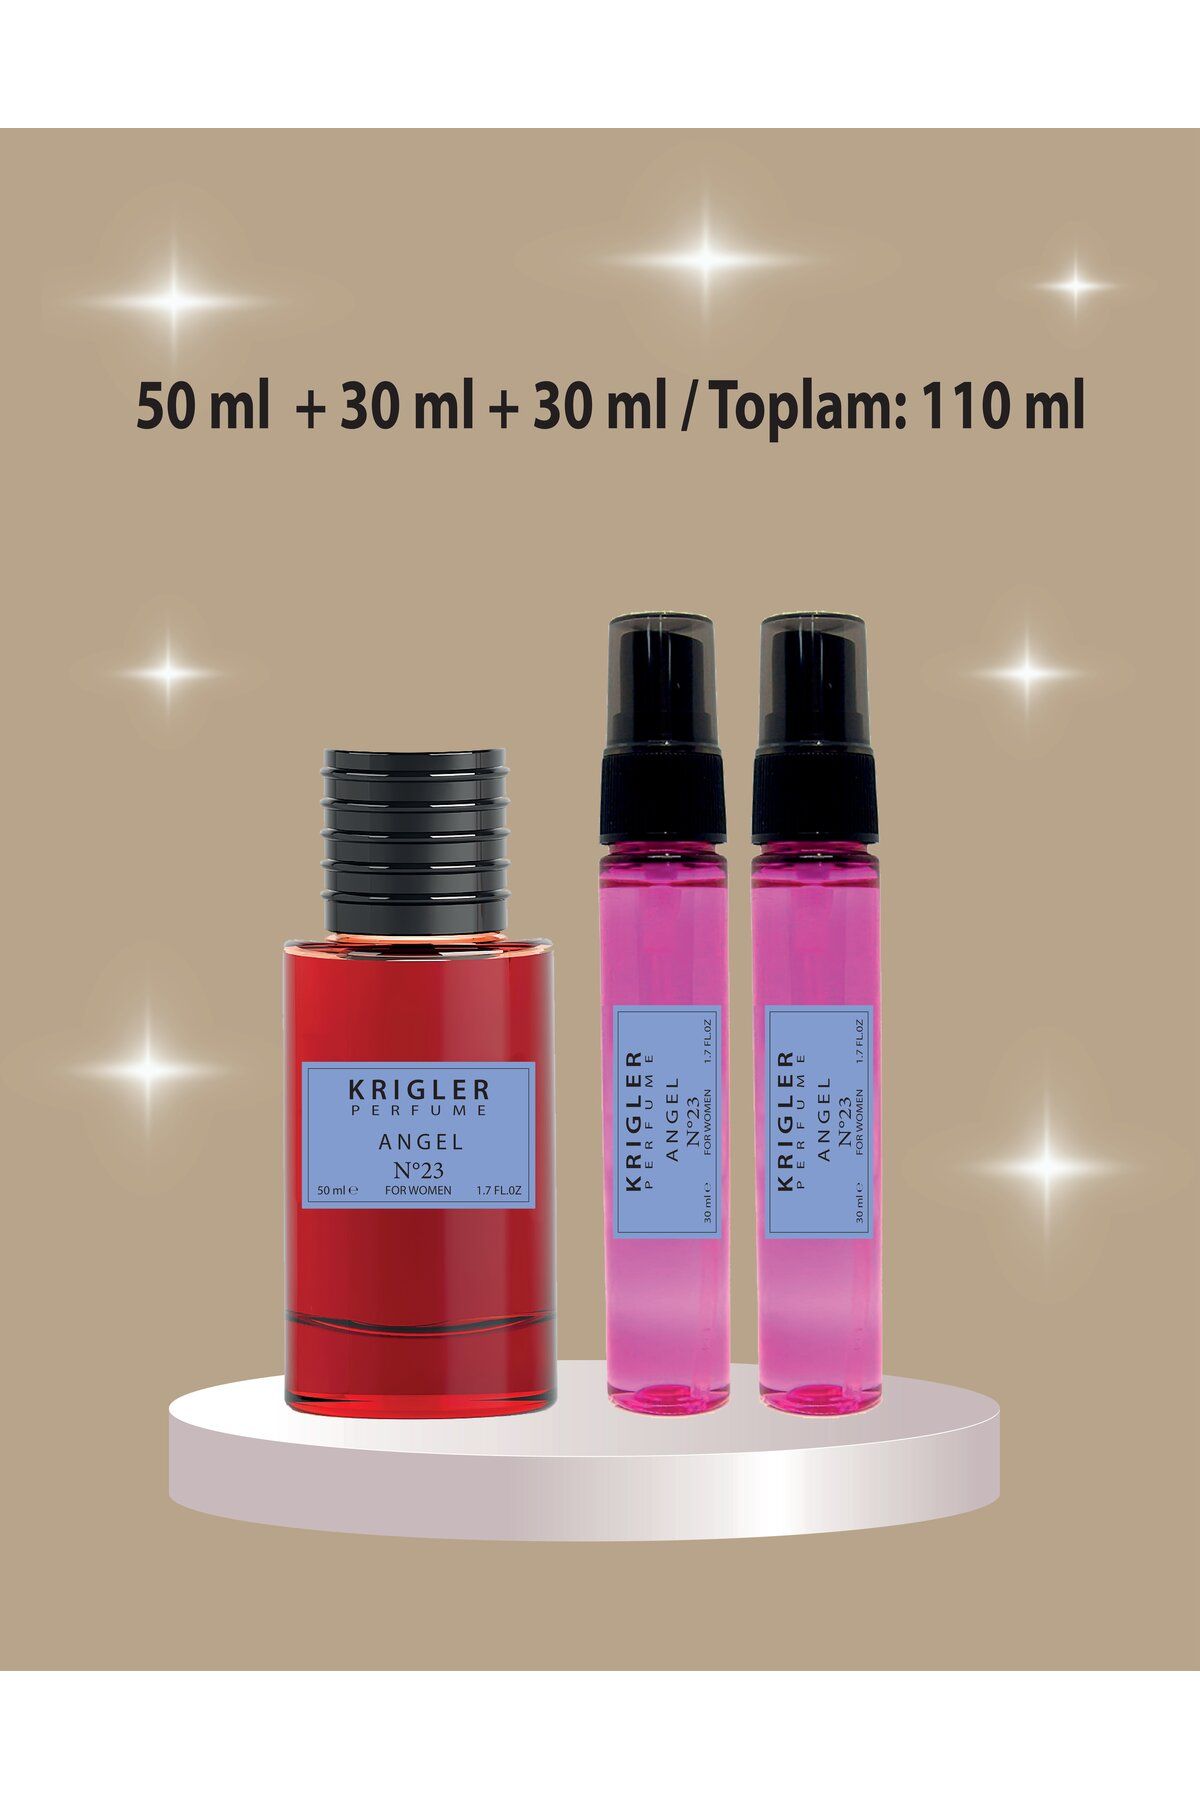 Krigler Angel Kadın Parfüm 110 ml